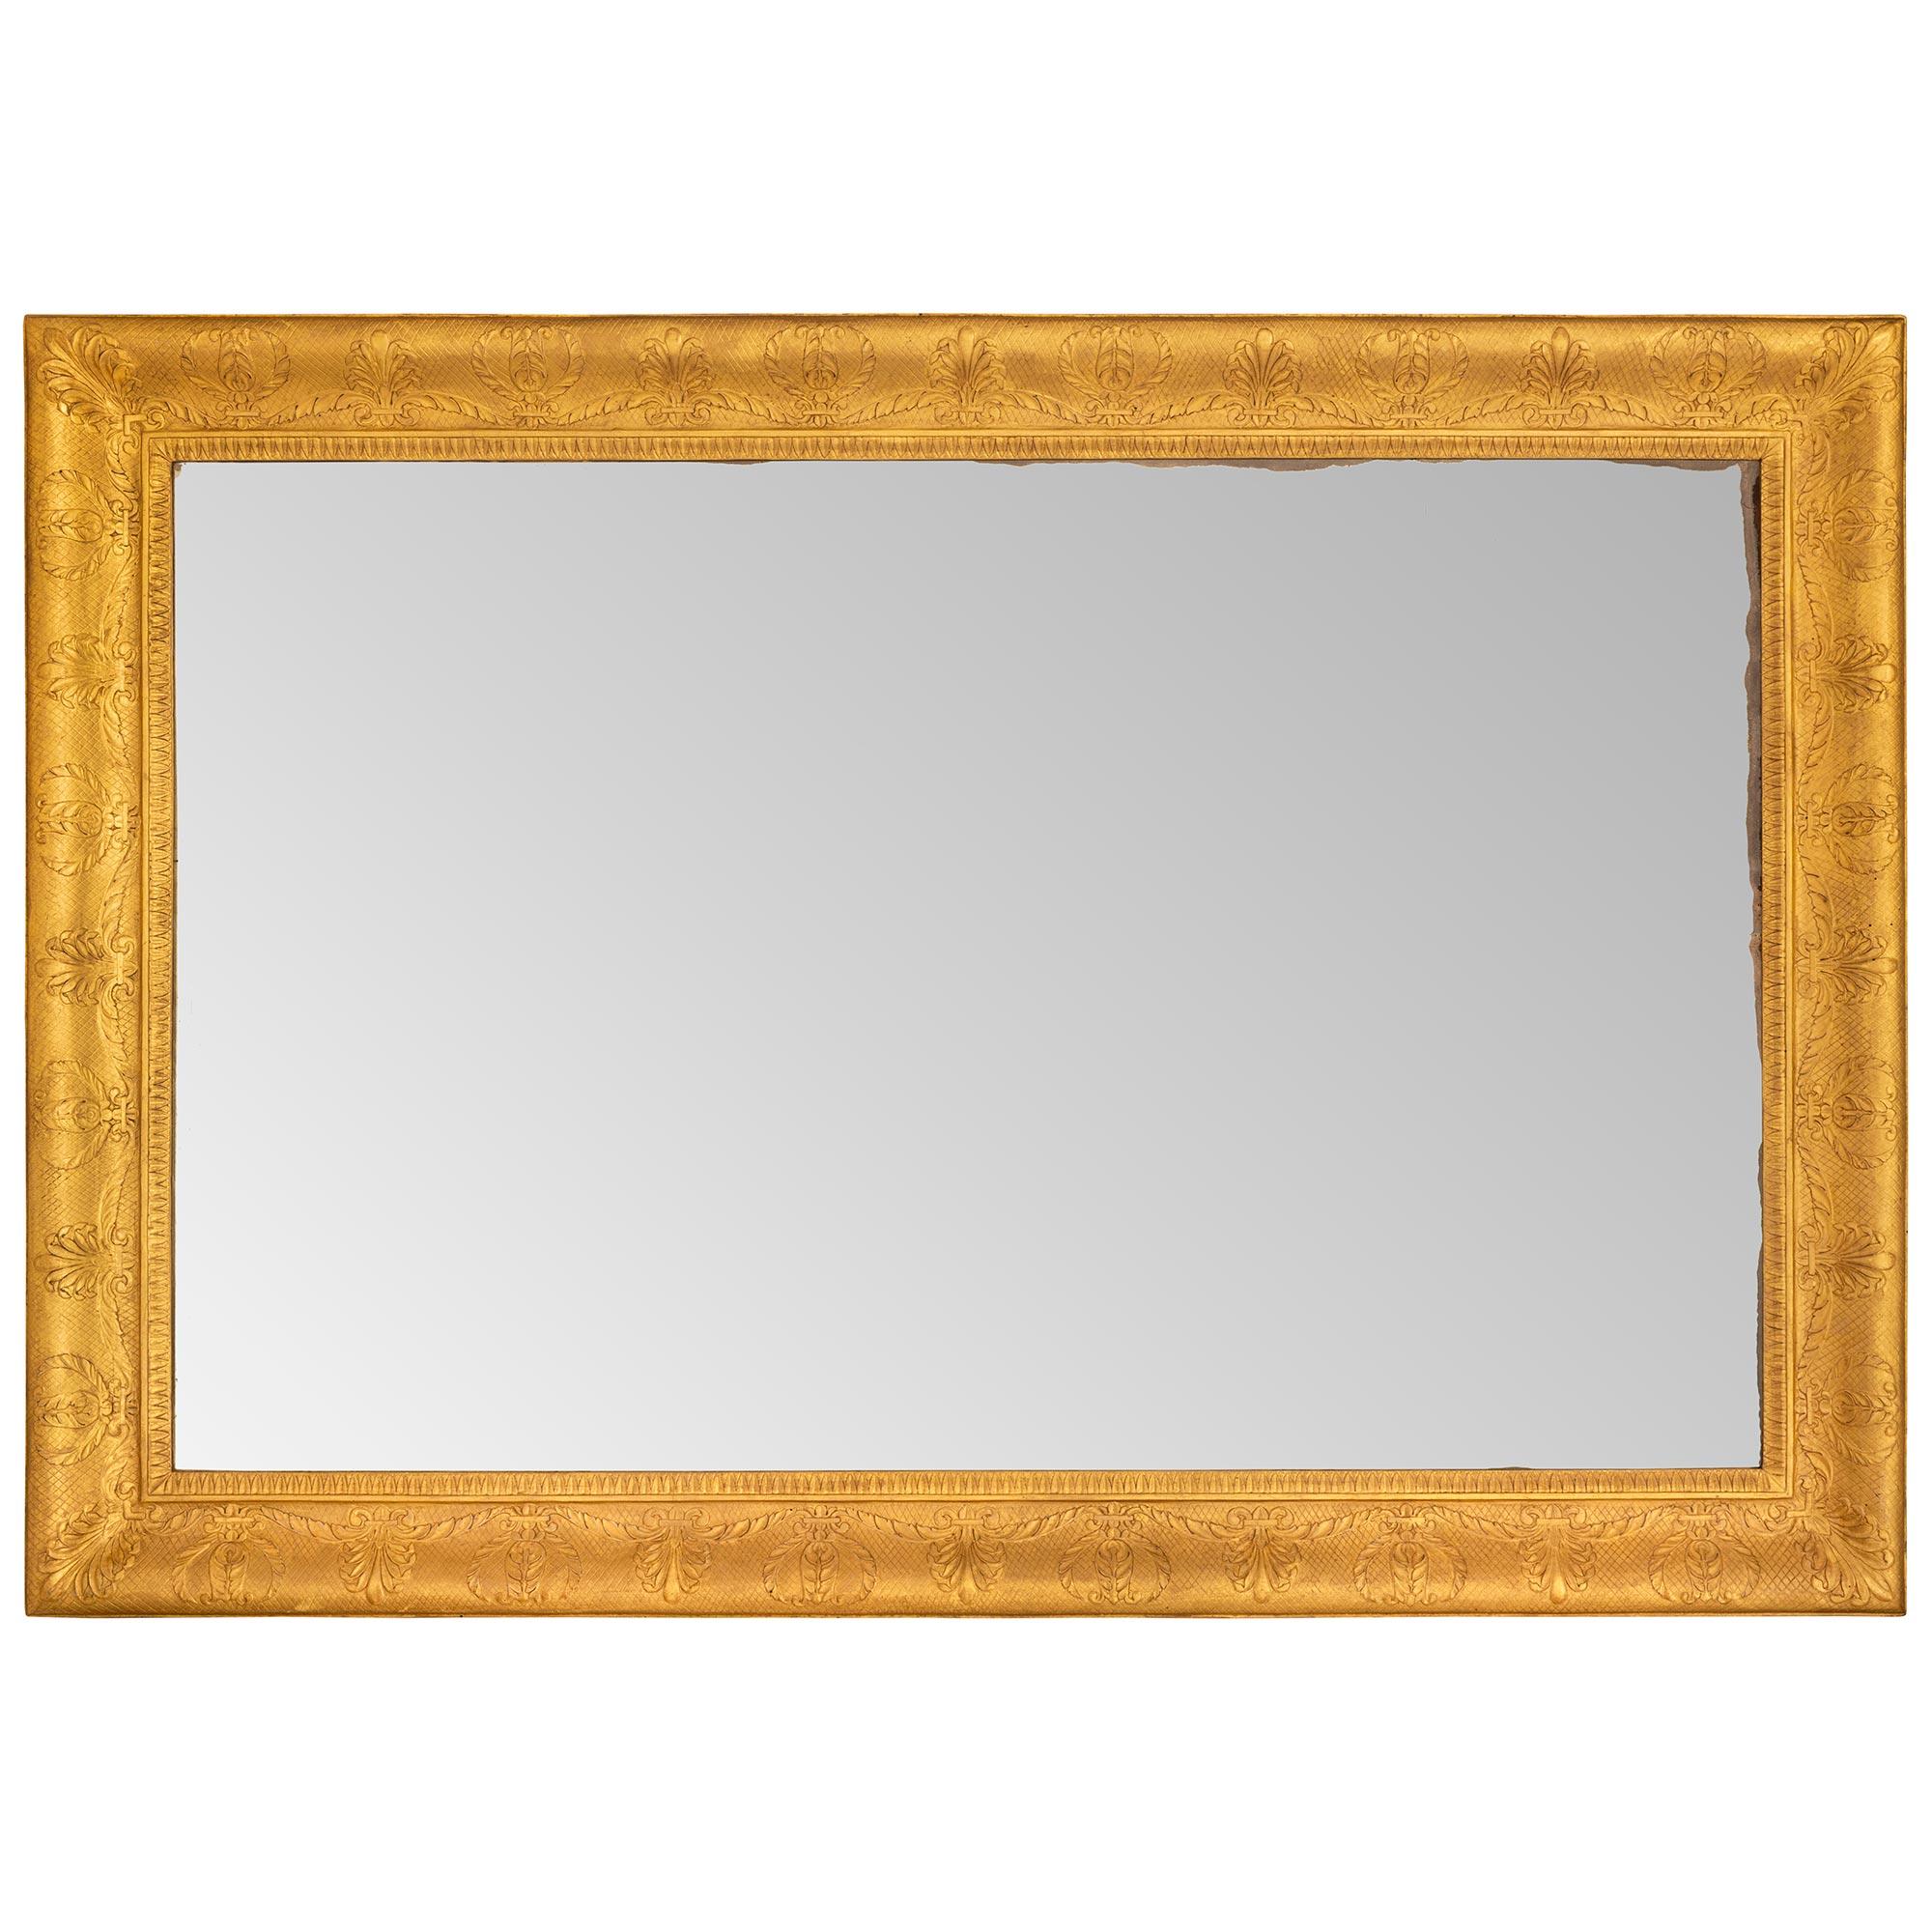 Magnifique miroir en bois doré de style néo-classique italien du milieu du 19e siècle. La plaque de miroir rectangulaire d'origine est encadrée dans un cadre en treillis en bois doré avec de jolies palmettes répétées tout au long et un bandeau